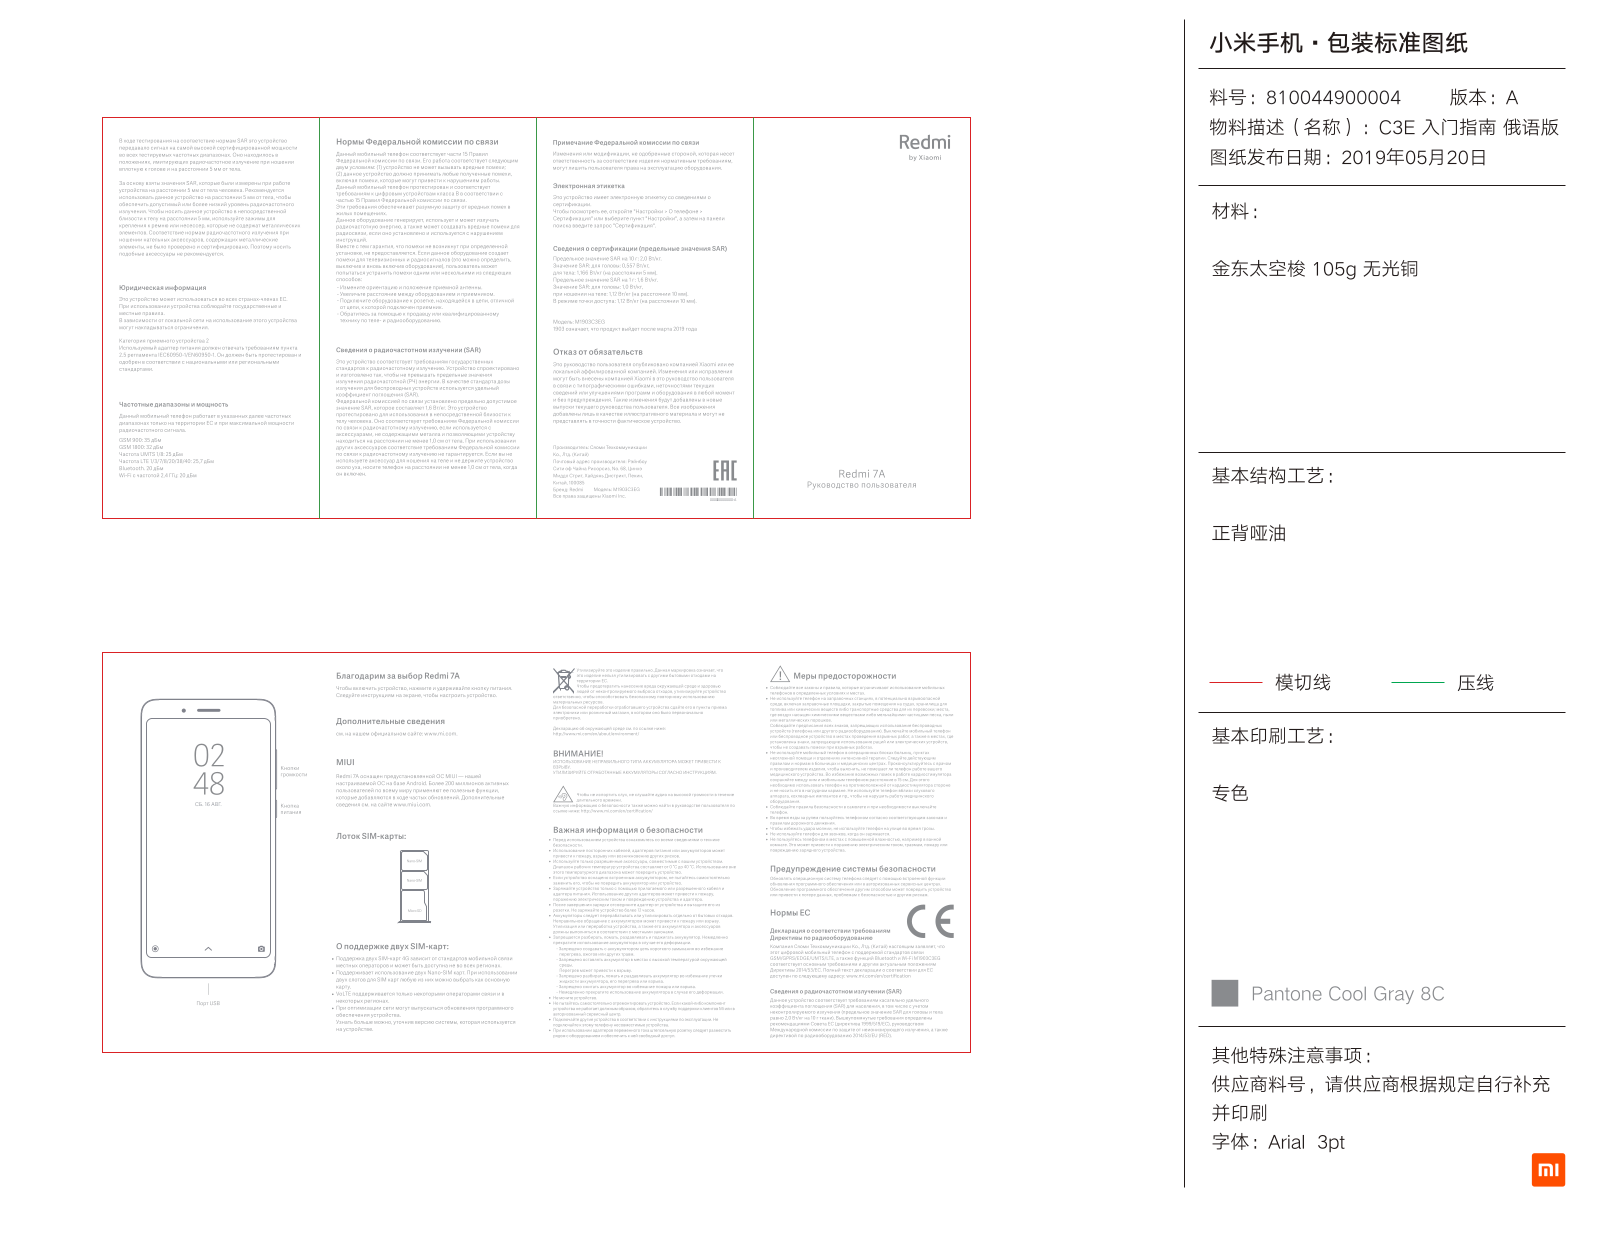 Xiaomi Redmi 7A User Manual